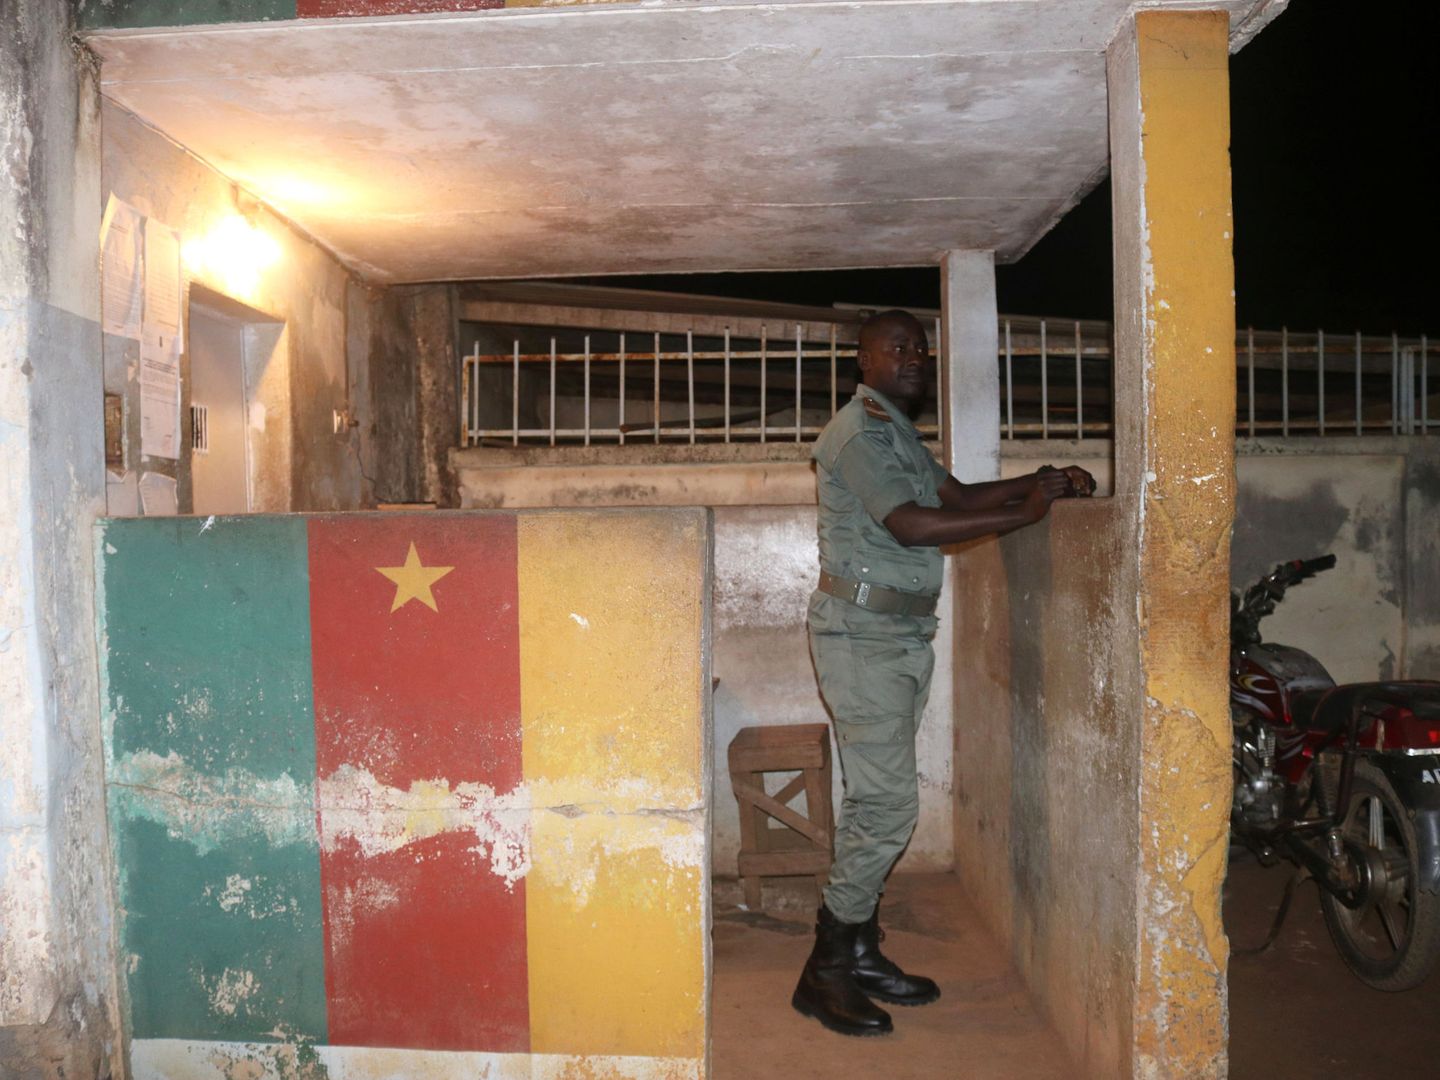 Un miembro de las fuerzas de seguridad monta guardia durante la liberación de activistas anglófonos detenidos en una cárcel de Yaundé, el 1 de septiembre de 2017, antes del estallido de la violencia. (Reuters)